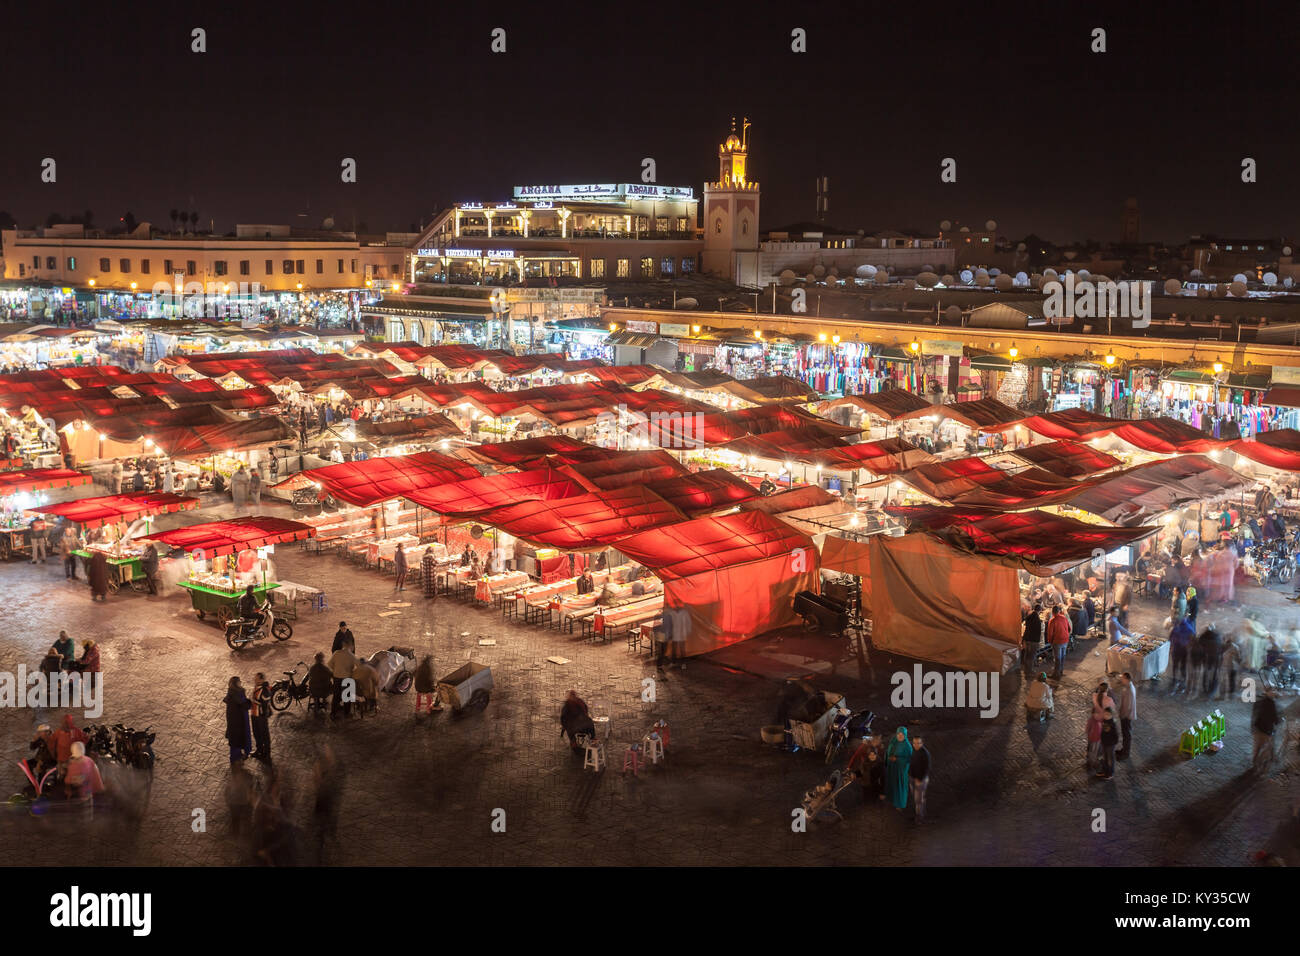 Marrakesch, Marokko - 22. FEBRUAR 2016: Djemaa el Fna (auch Jemaa el-Fnaa, Djema el-Fna oder Djemaa el-Fnaa) ist ein Quadrat und Marktplatz in Marrakesch ist Stockfoto